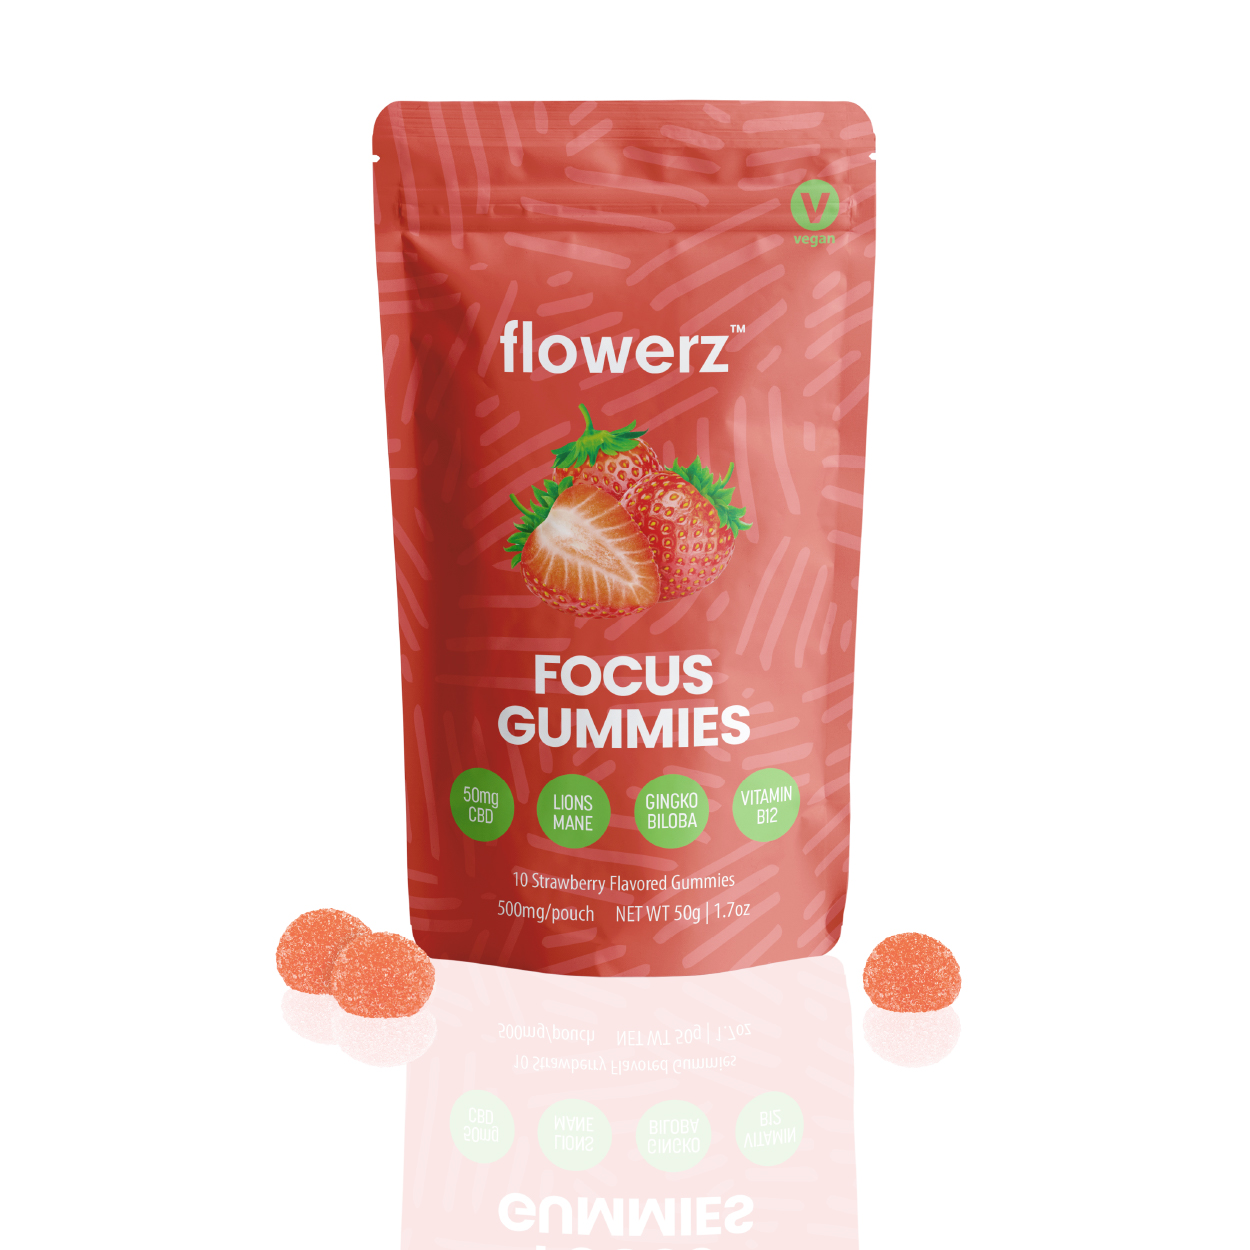 flowerz focus gummies package